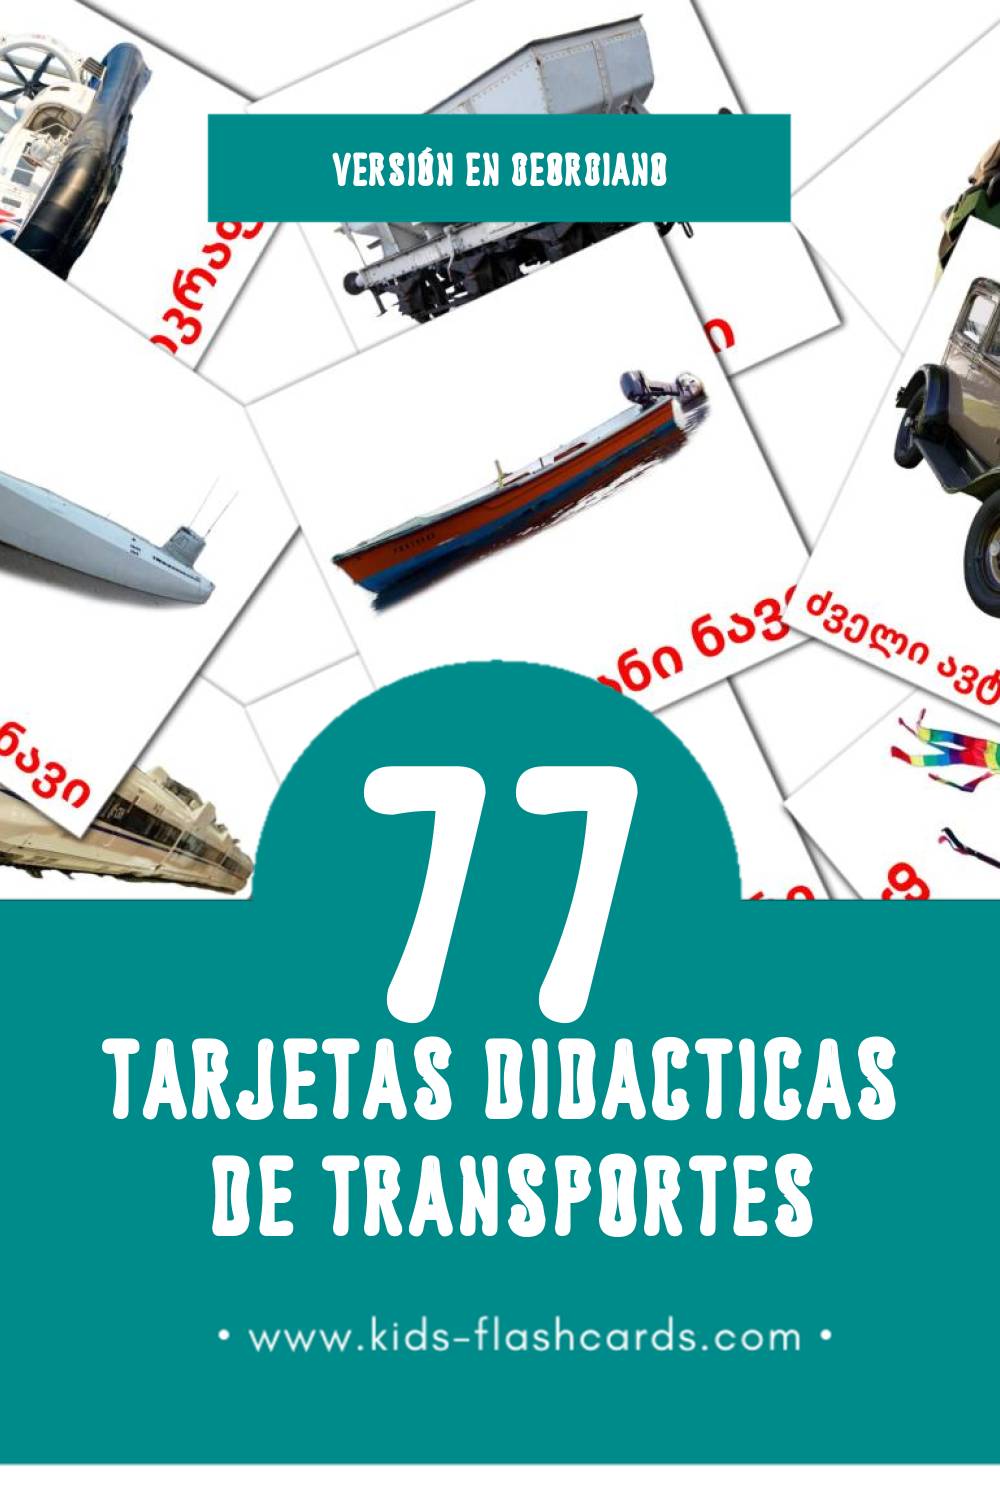 Tarjetas visuales de ტრანსპორტი para niños pequeños (77 tarjetas en Georgiano)